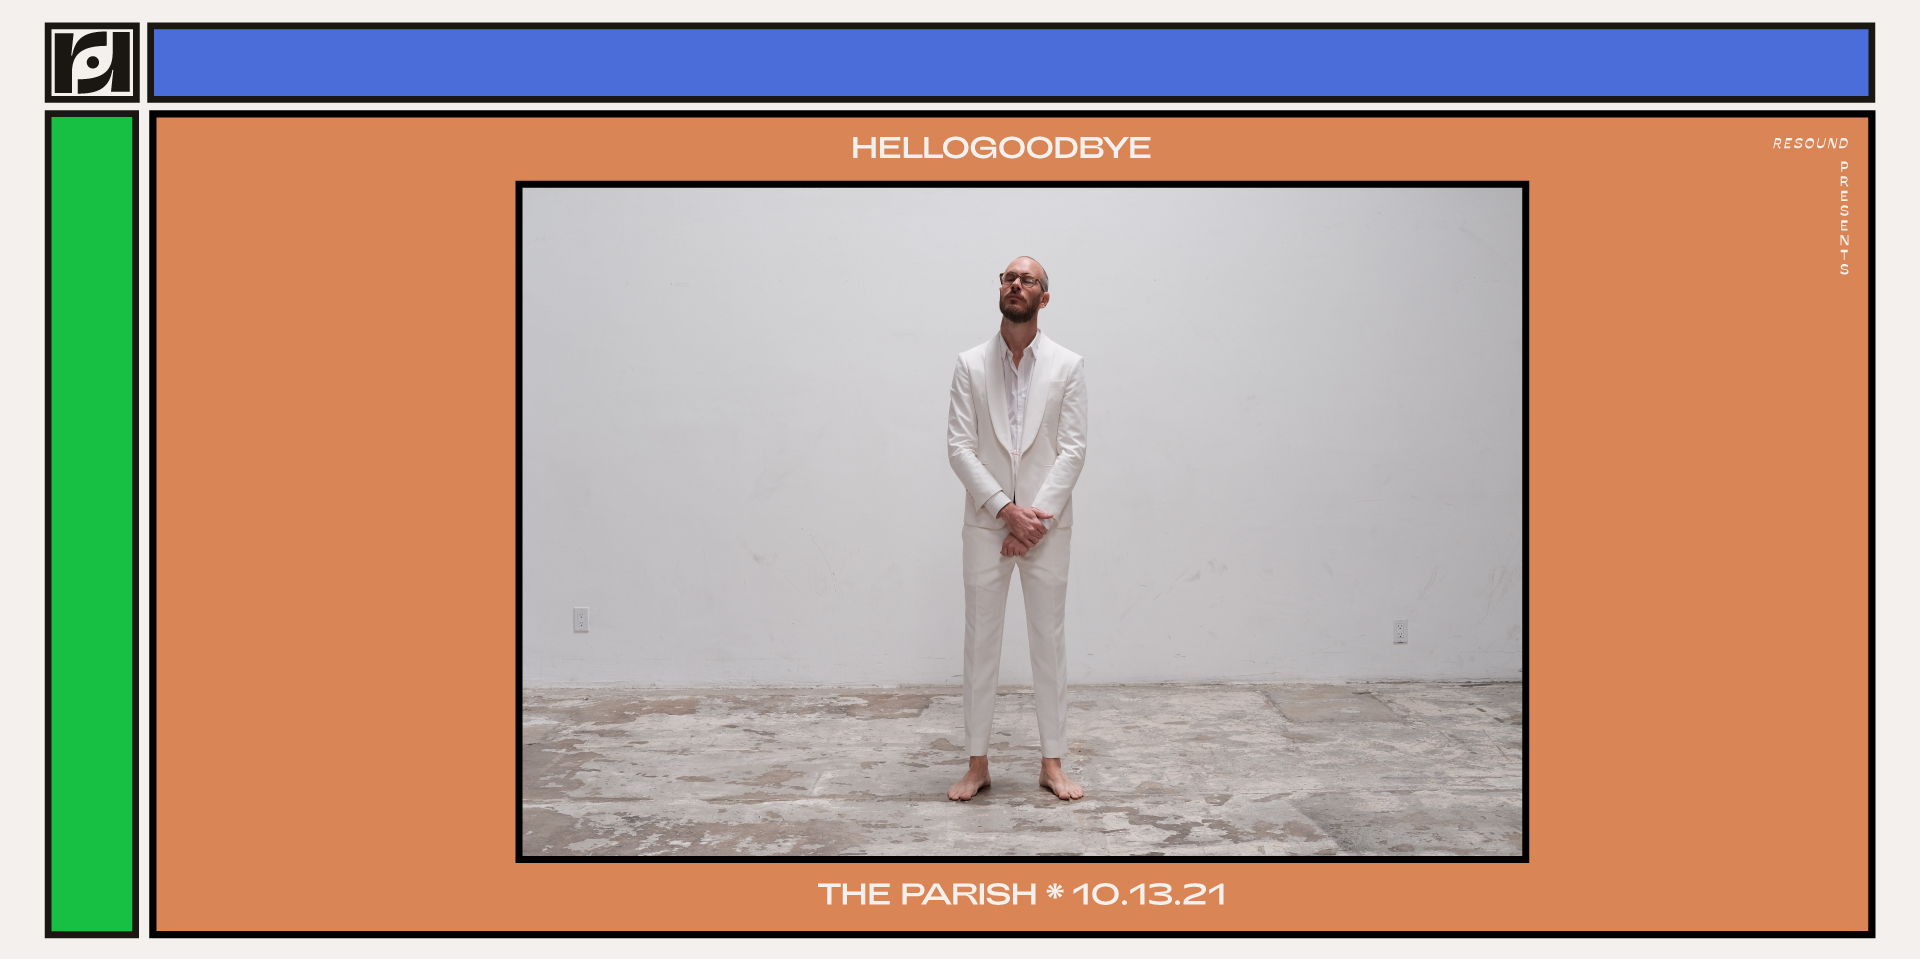 Hellogoodbye  promotional image